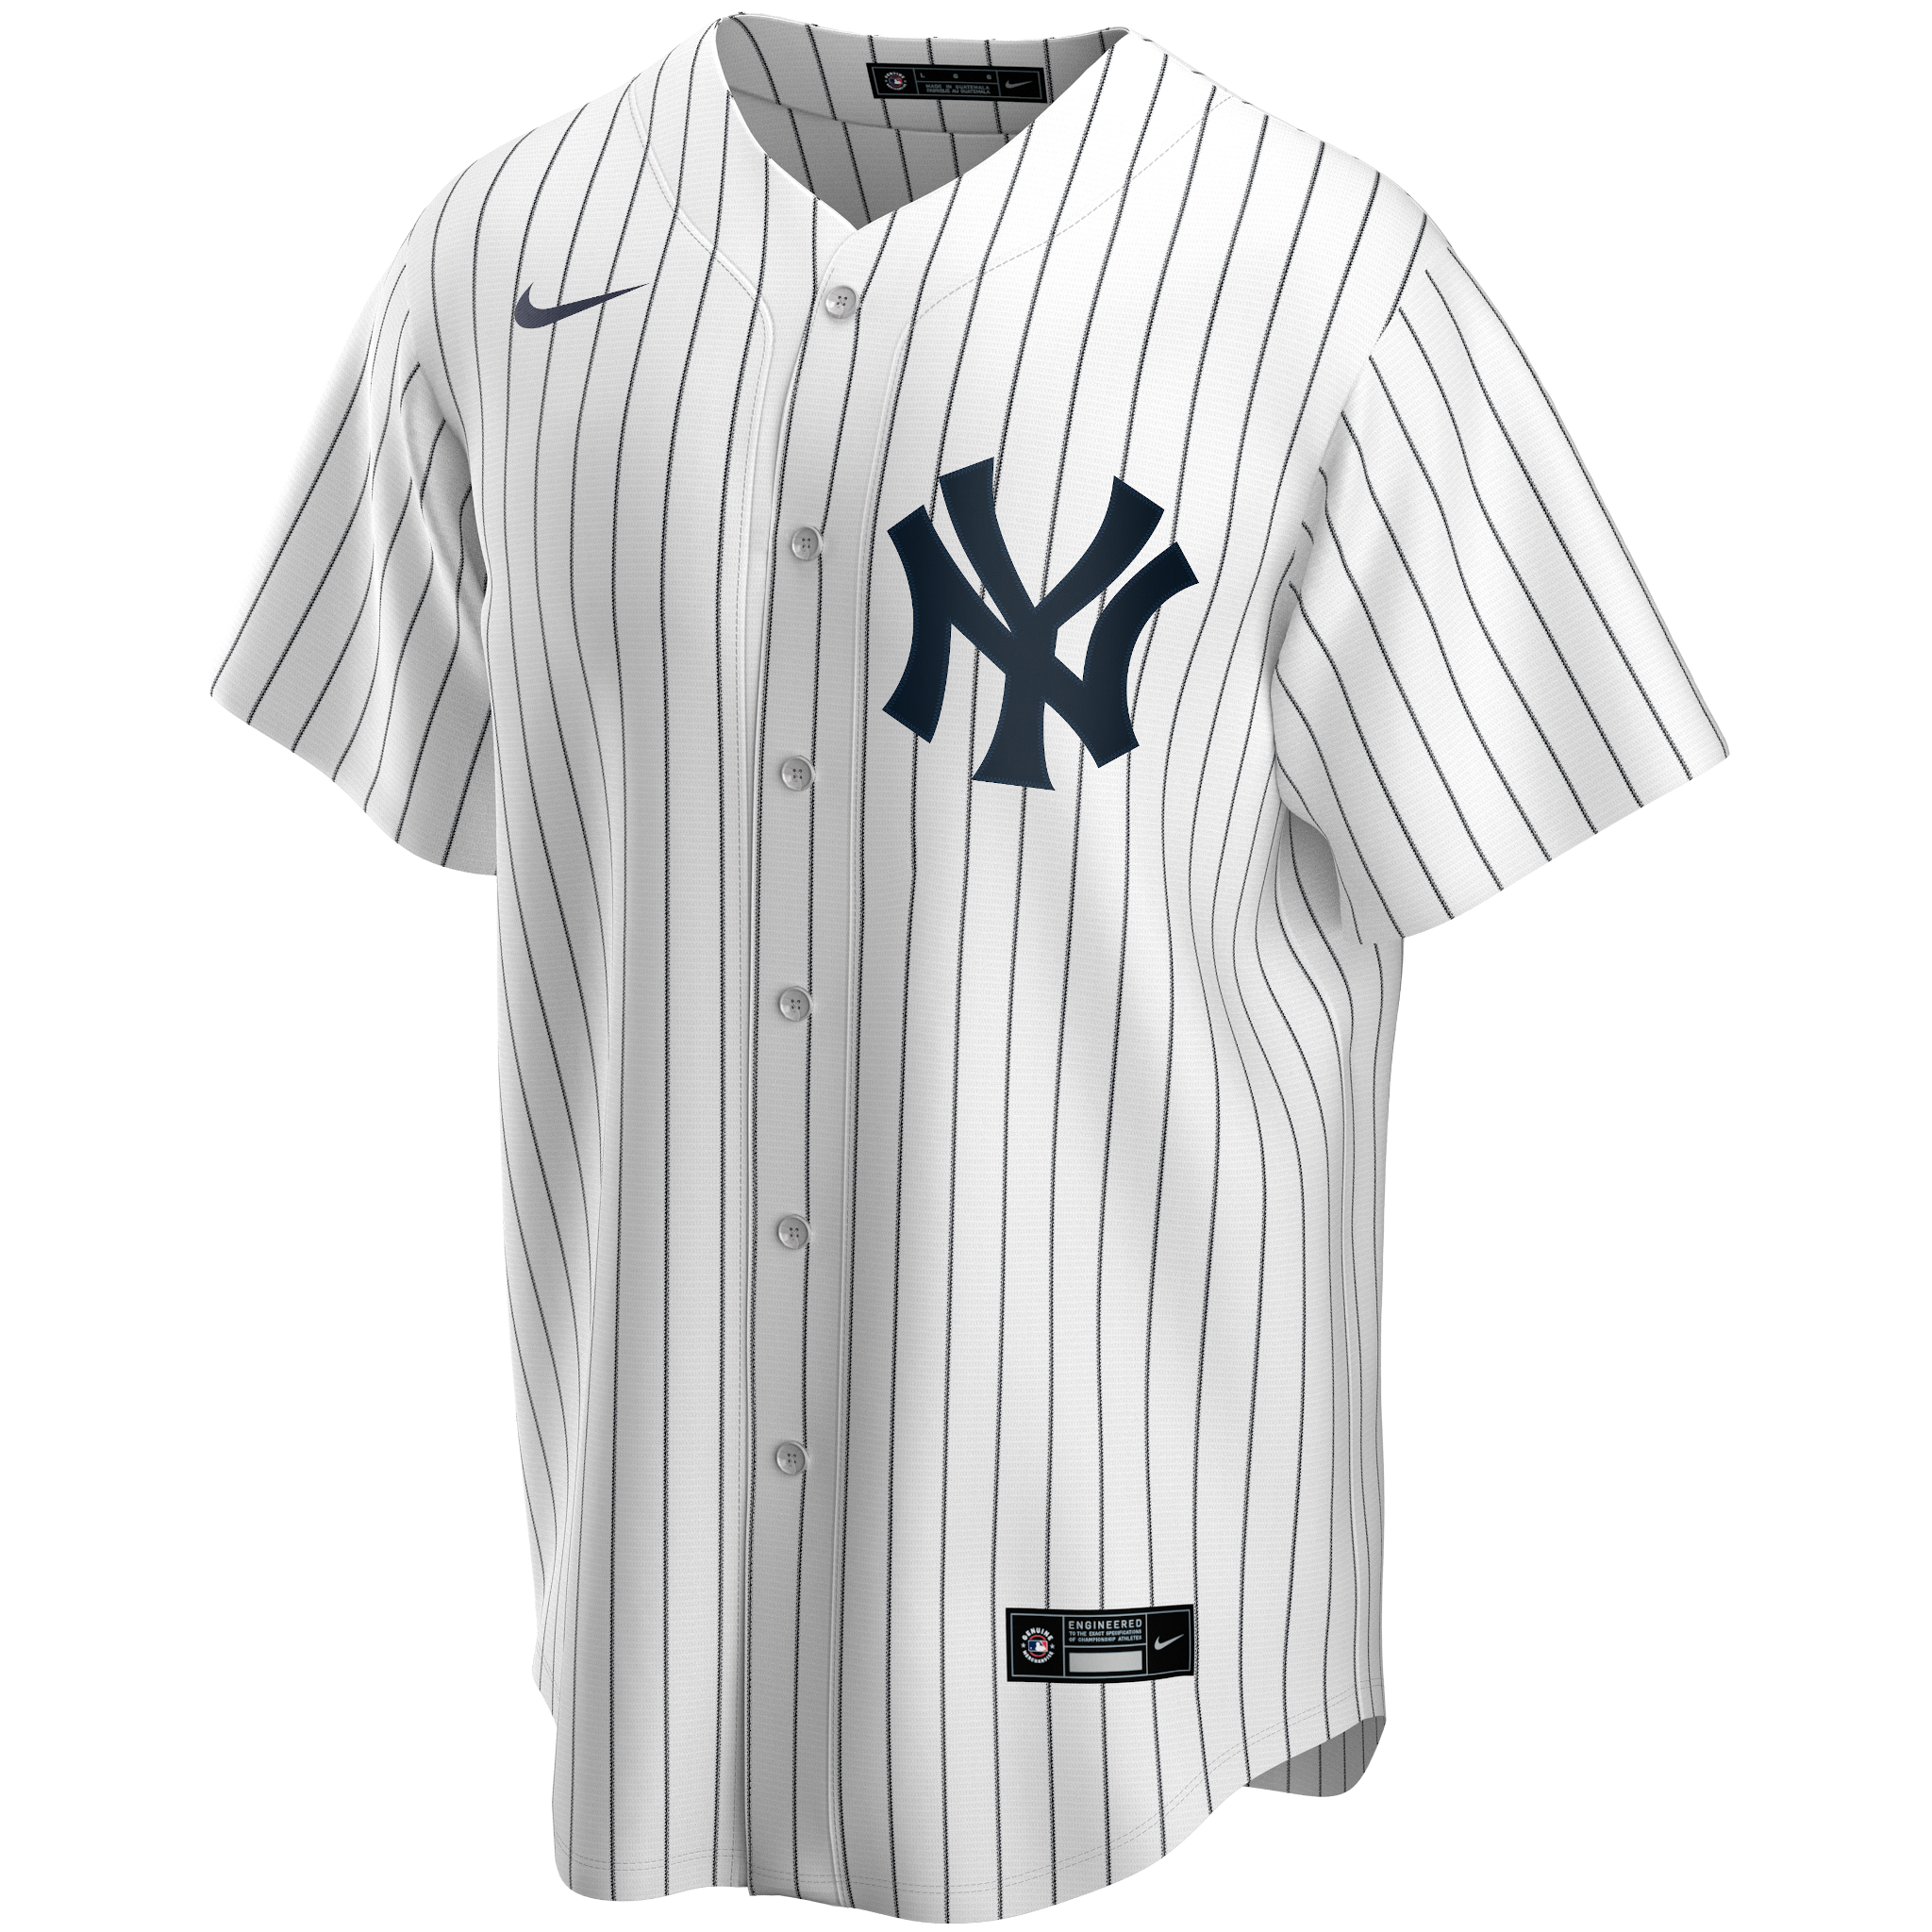 1997 Pro Player Tino Martinez New York Yankees T-Shirt